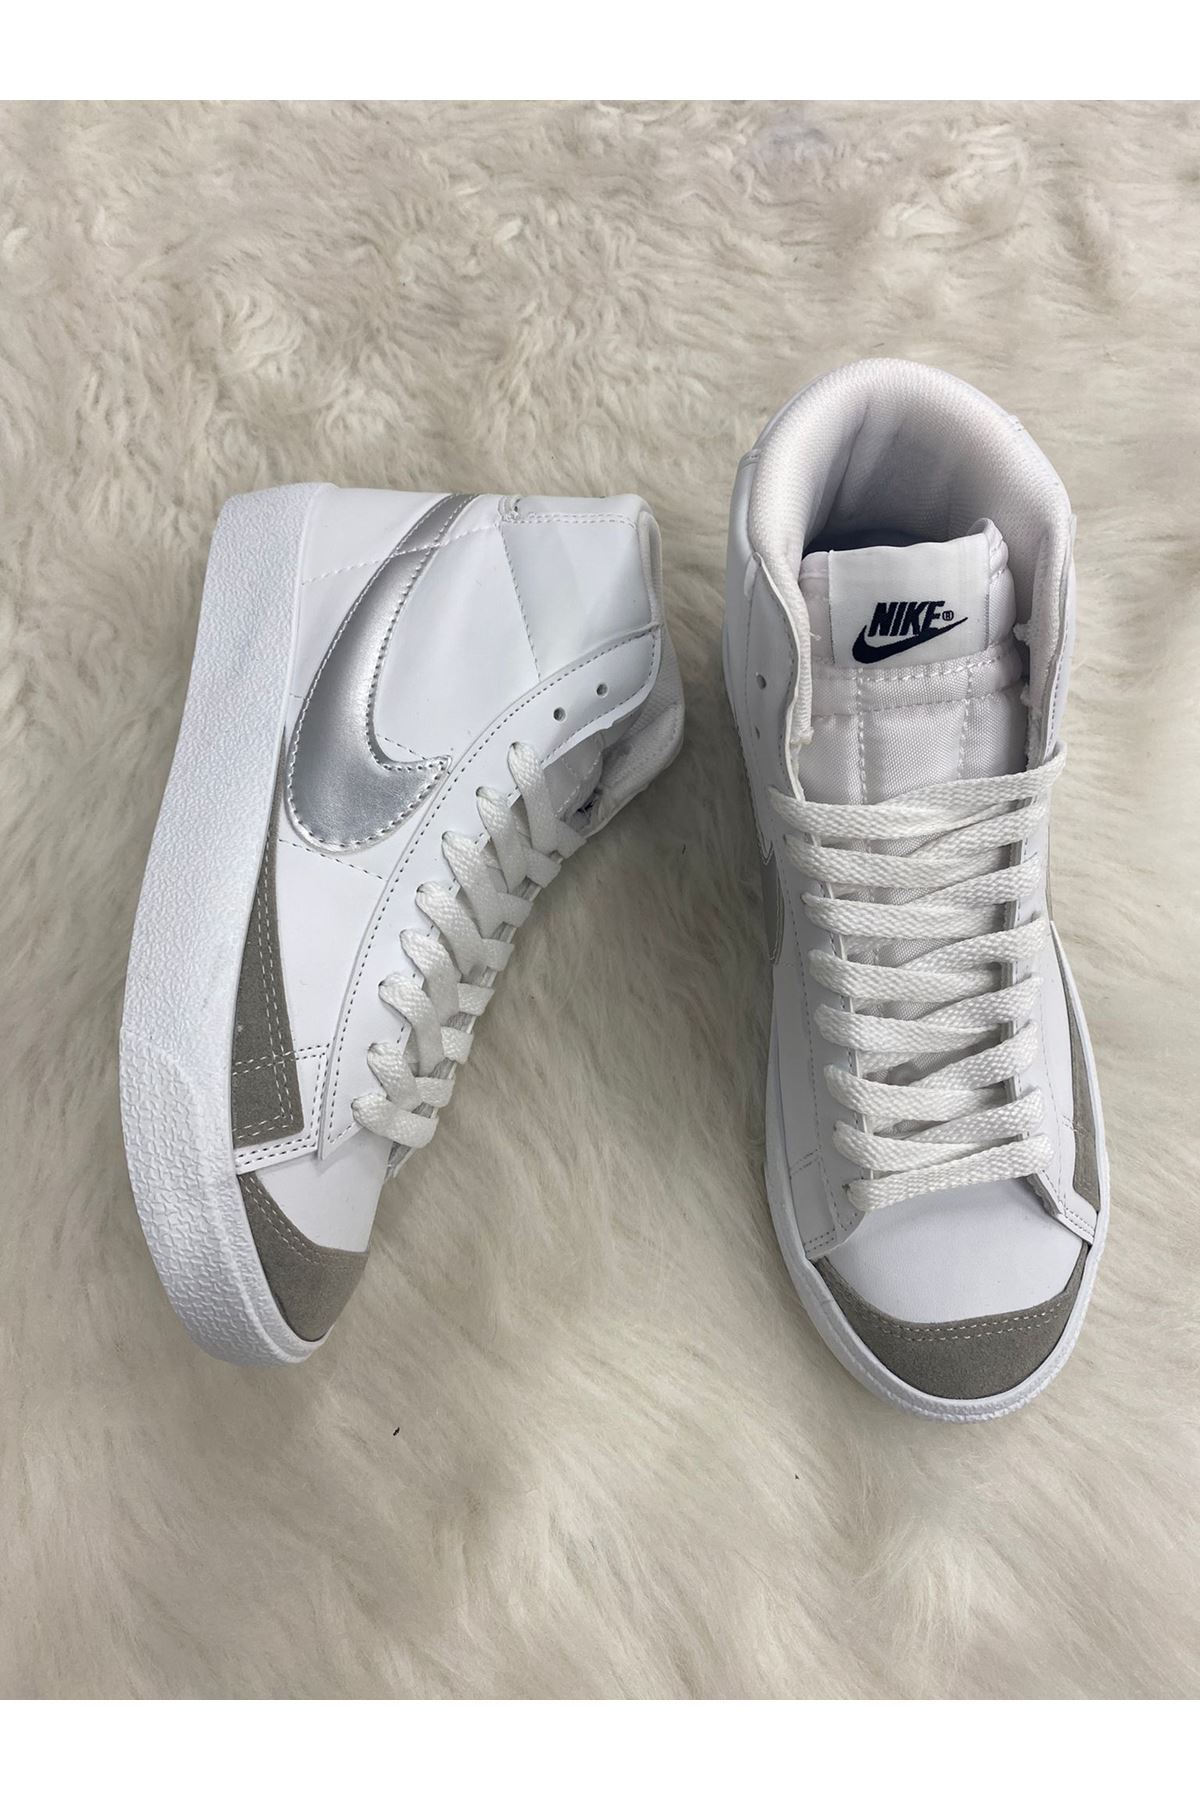 Nike Blazer Beyaz Gümüş